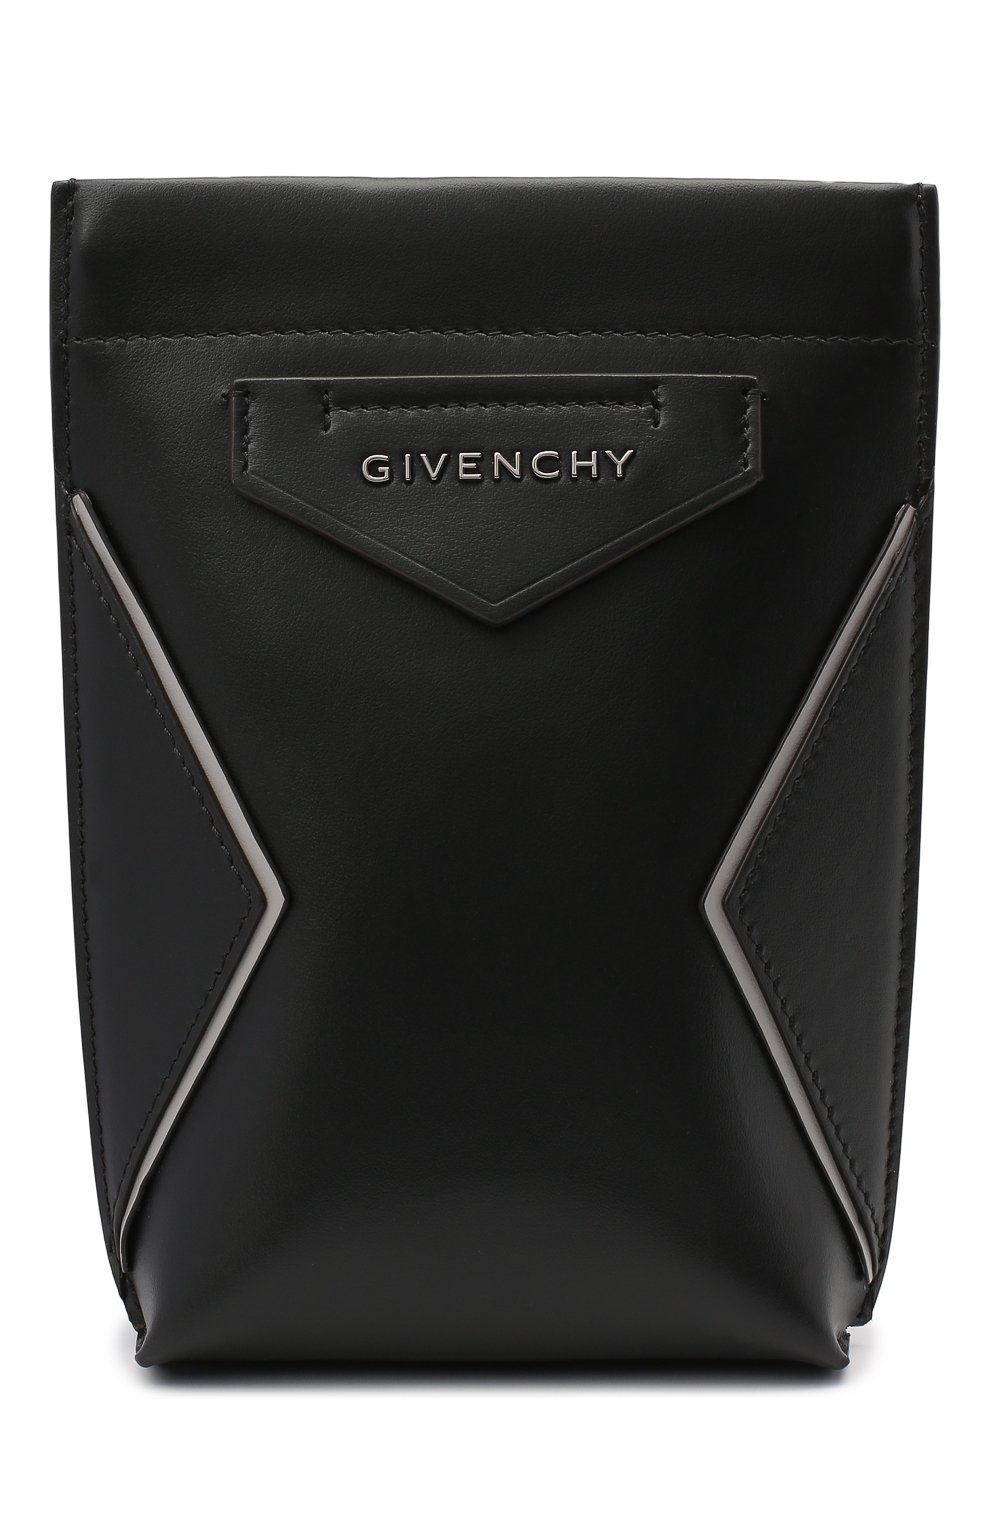 Сумки-мессенджеры Givenchy, Кожаная сумка Antigona Givenchy, Италия, Чёрный, Кожа натуральная: 100%;, 11477158  - купить